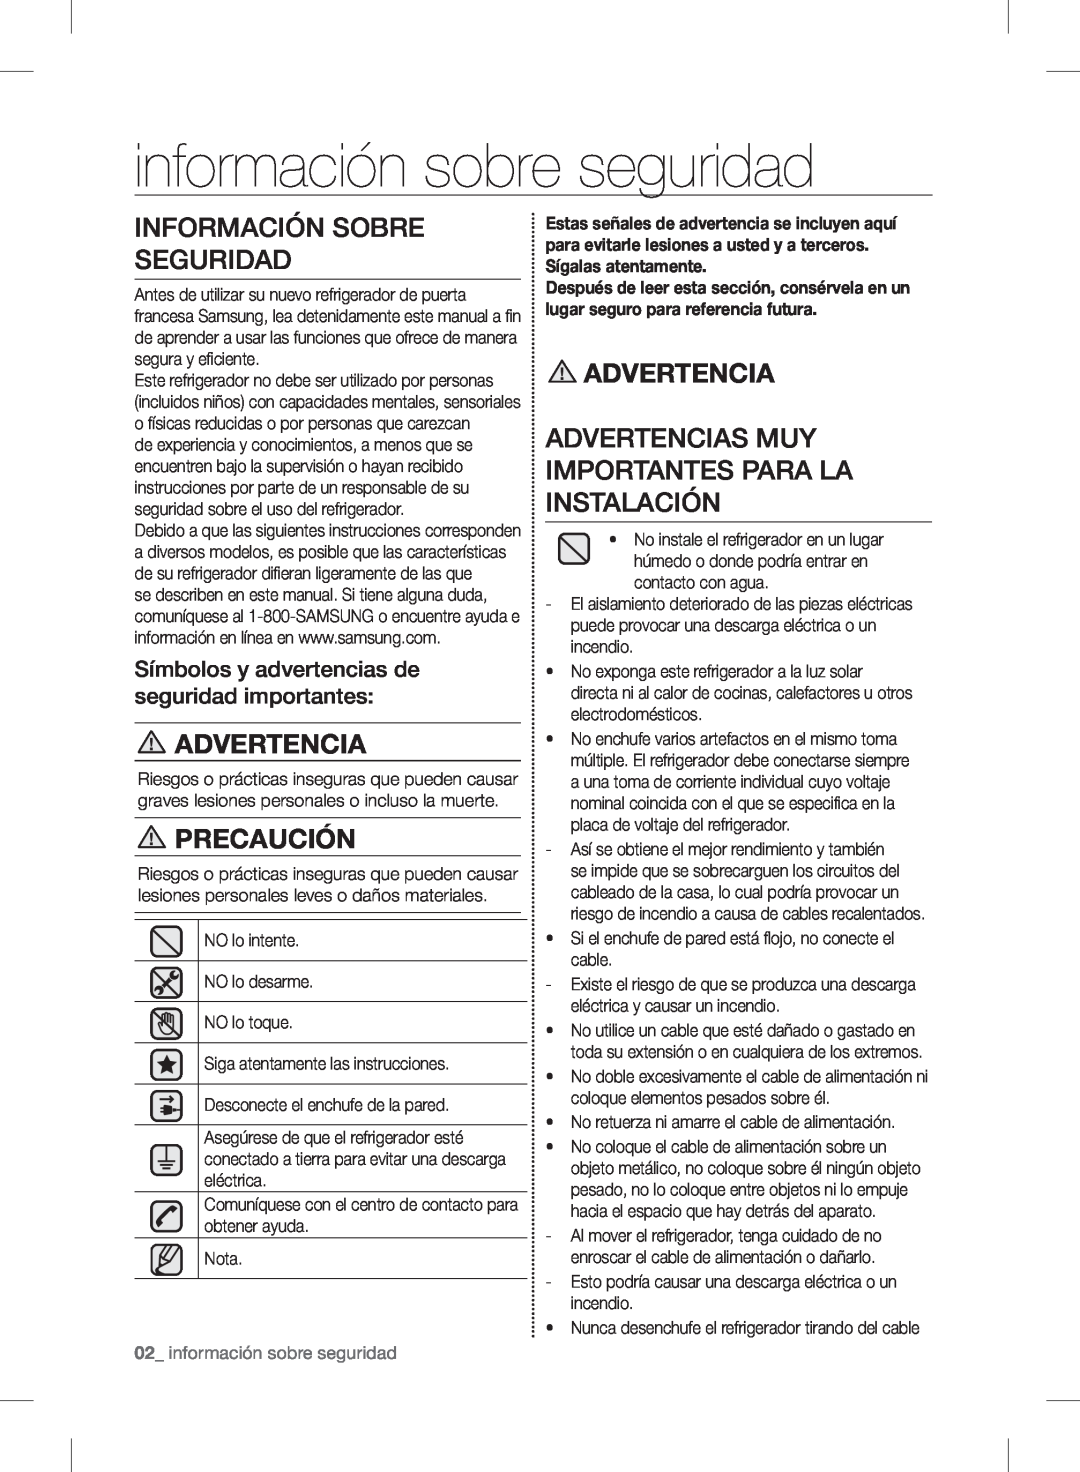 Samsung RF24FSEDBSR user manual información sobre seguridad, Información Sobre Seguridad, Advertencia, Precaución 